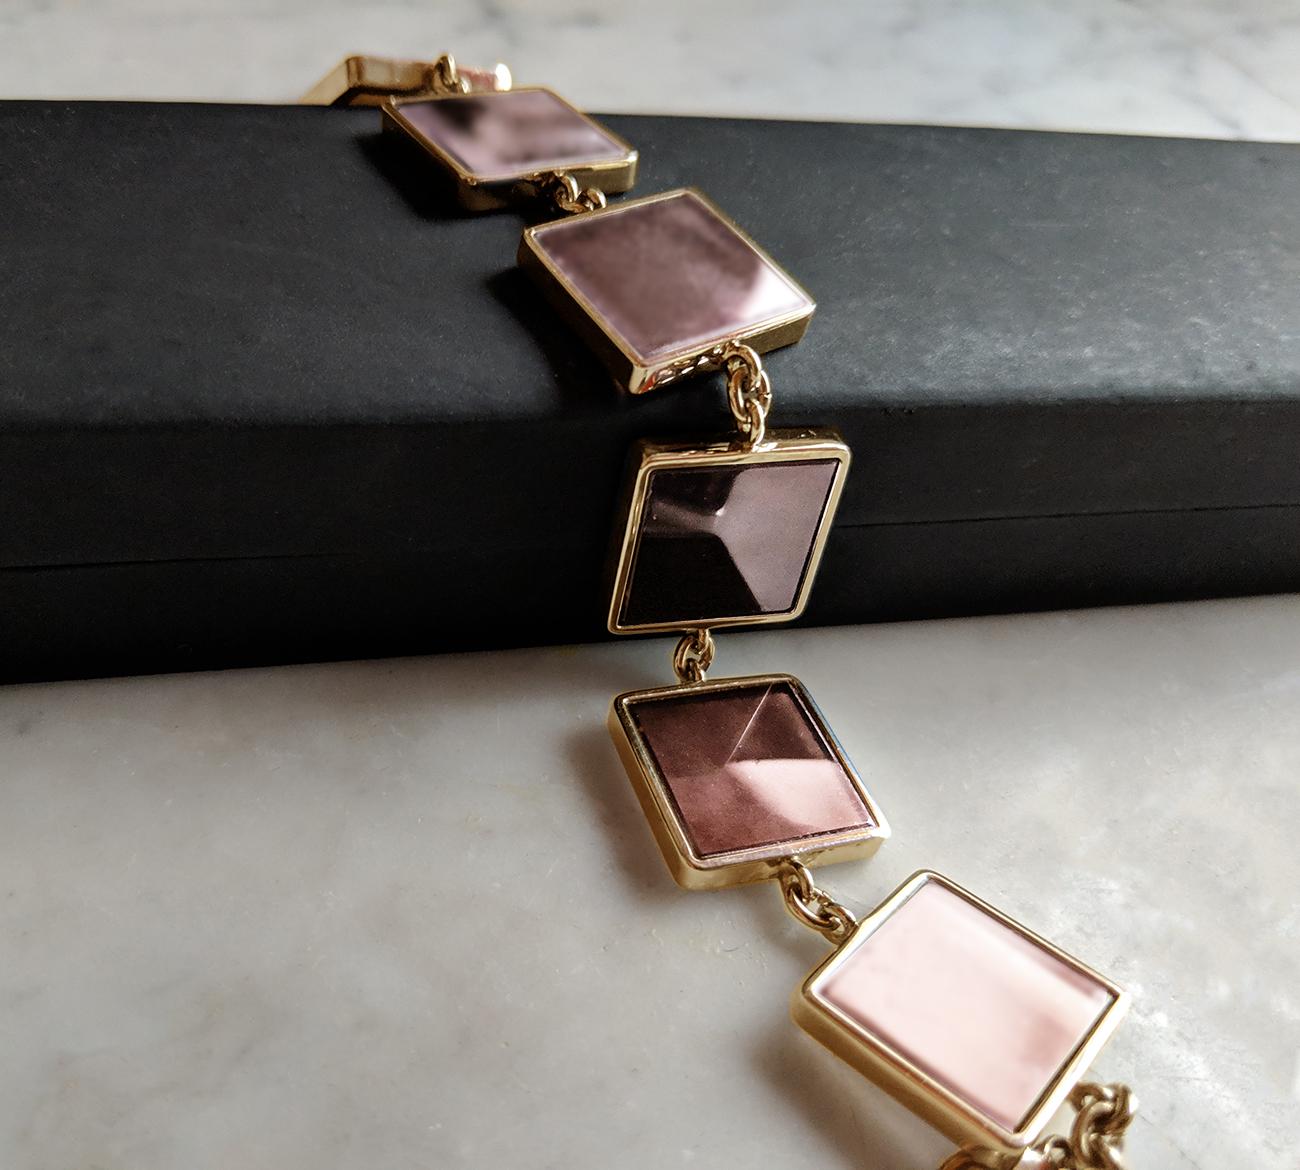 Ce bracelet de créateur est en argent plaqué or rose avec sept pierres en onyx rose de 15x15x3 mm. La collection Ink a été présentée dans les numéros publiés par Harper's Bazaar UA et Vogue UA.

Le bracelet brille doucement grâce à l'or et à la